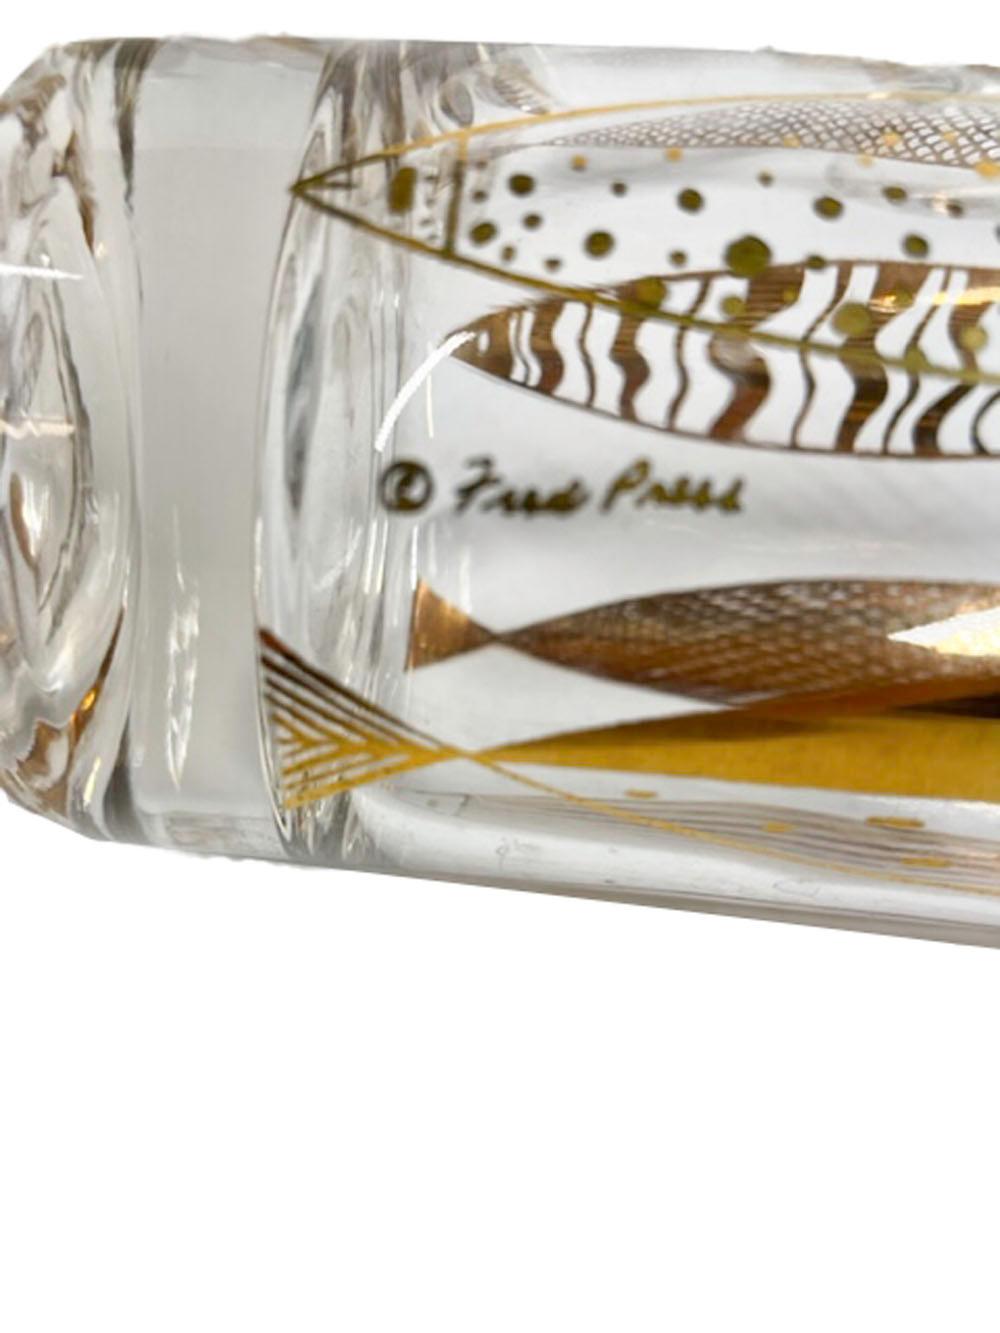 Américain MCM, Fred Press - Verres longs « poissons dorés », or 22 carats sur verre transparent